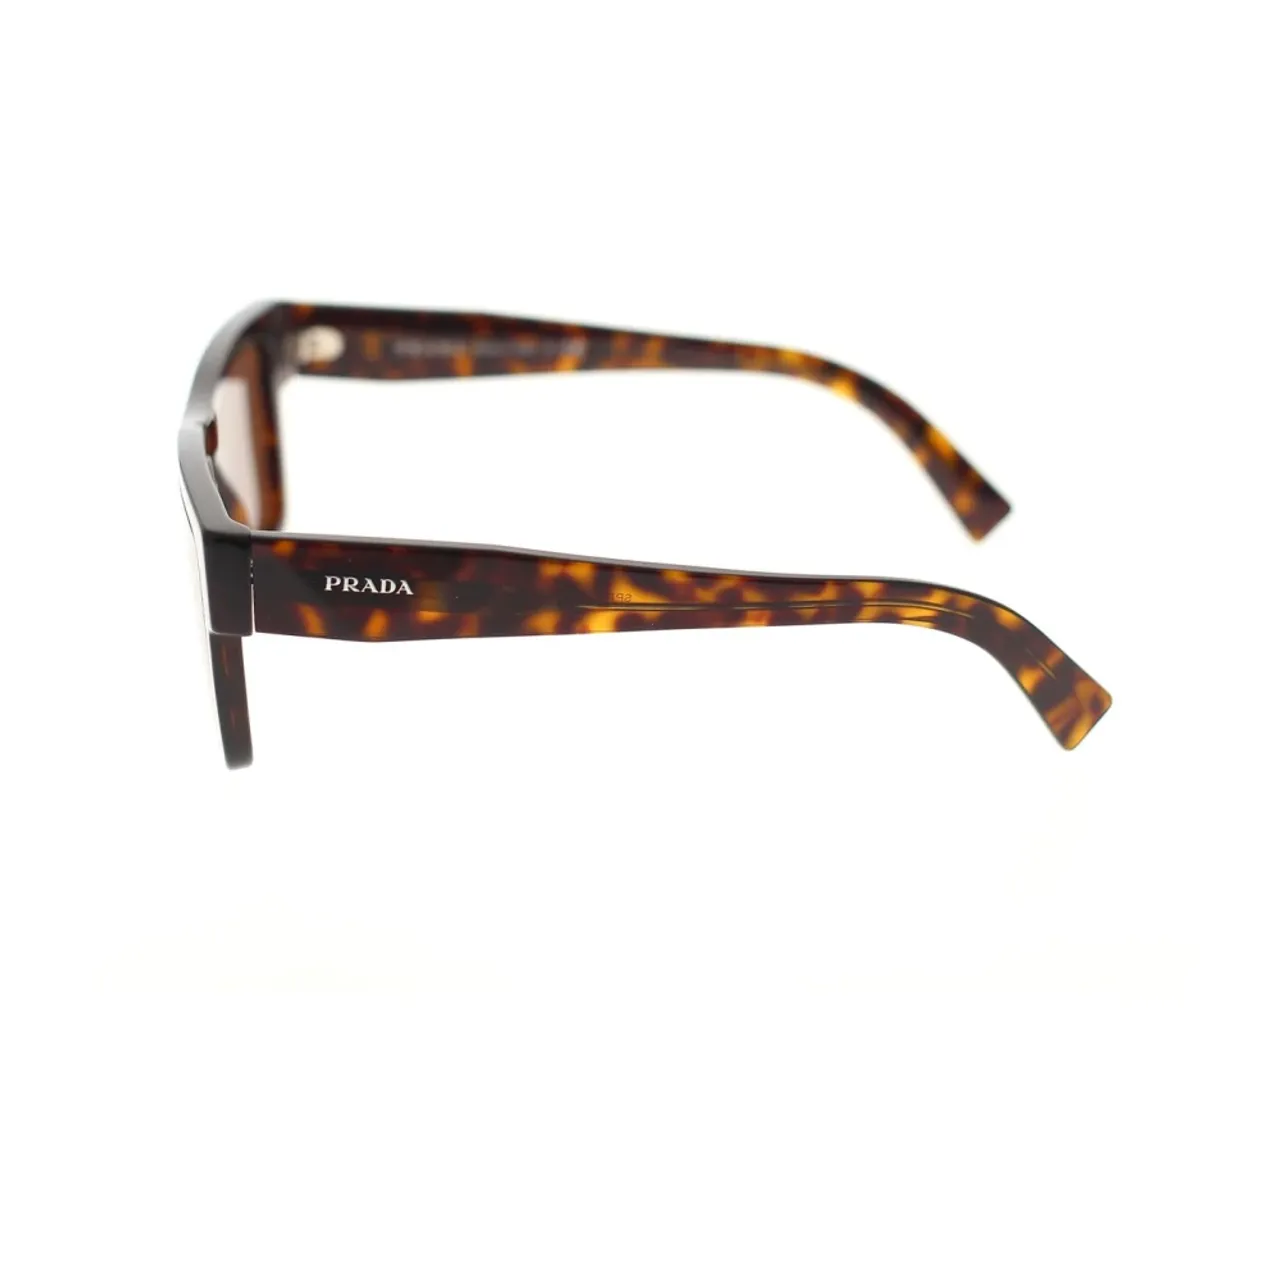 Prada , Classic Rectangular Sunglasses ,Brown unisex, Sizes: